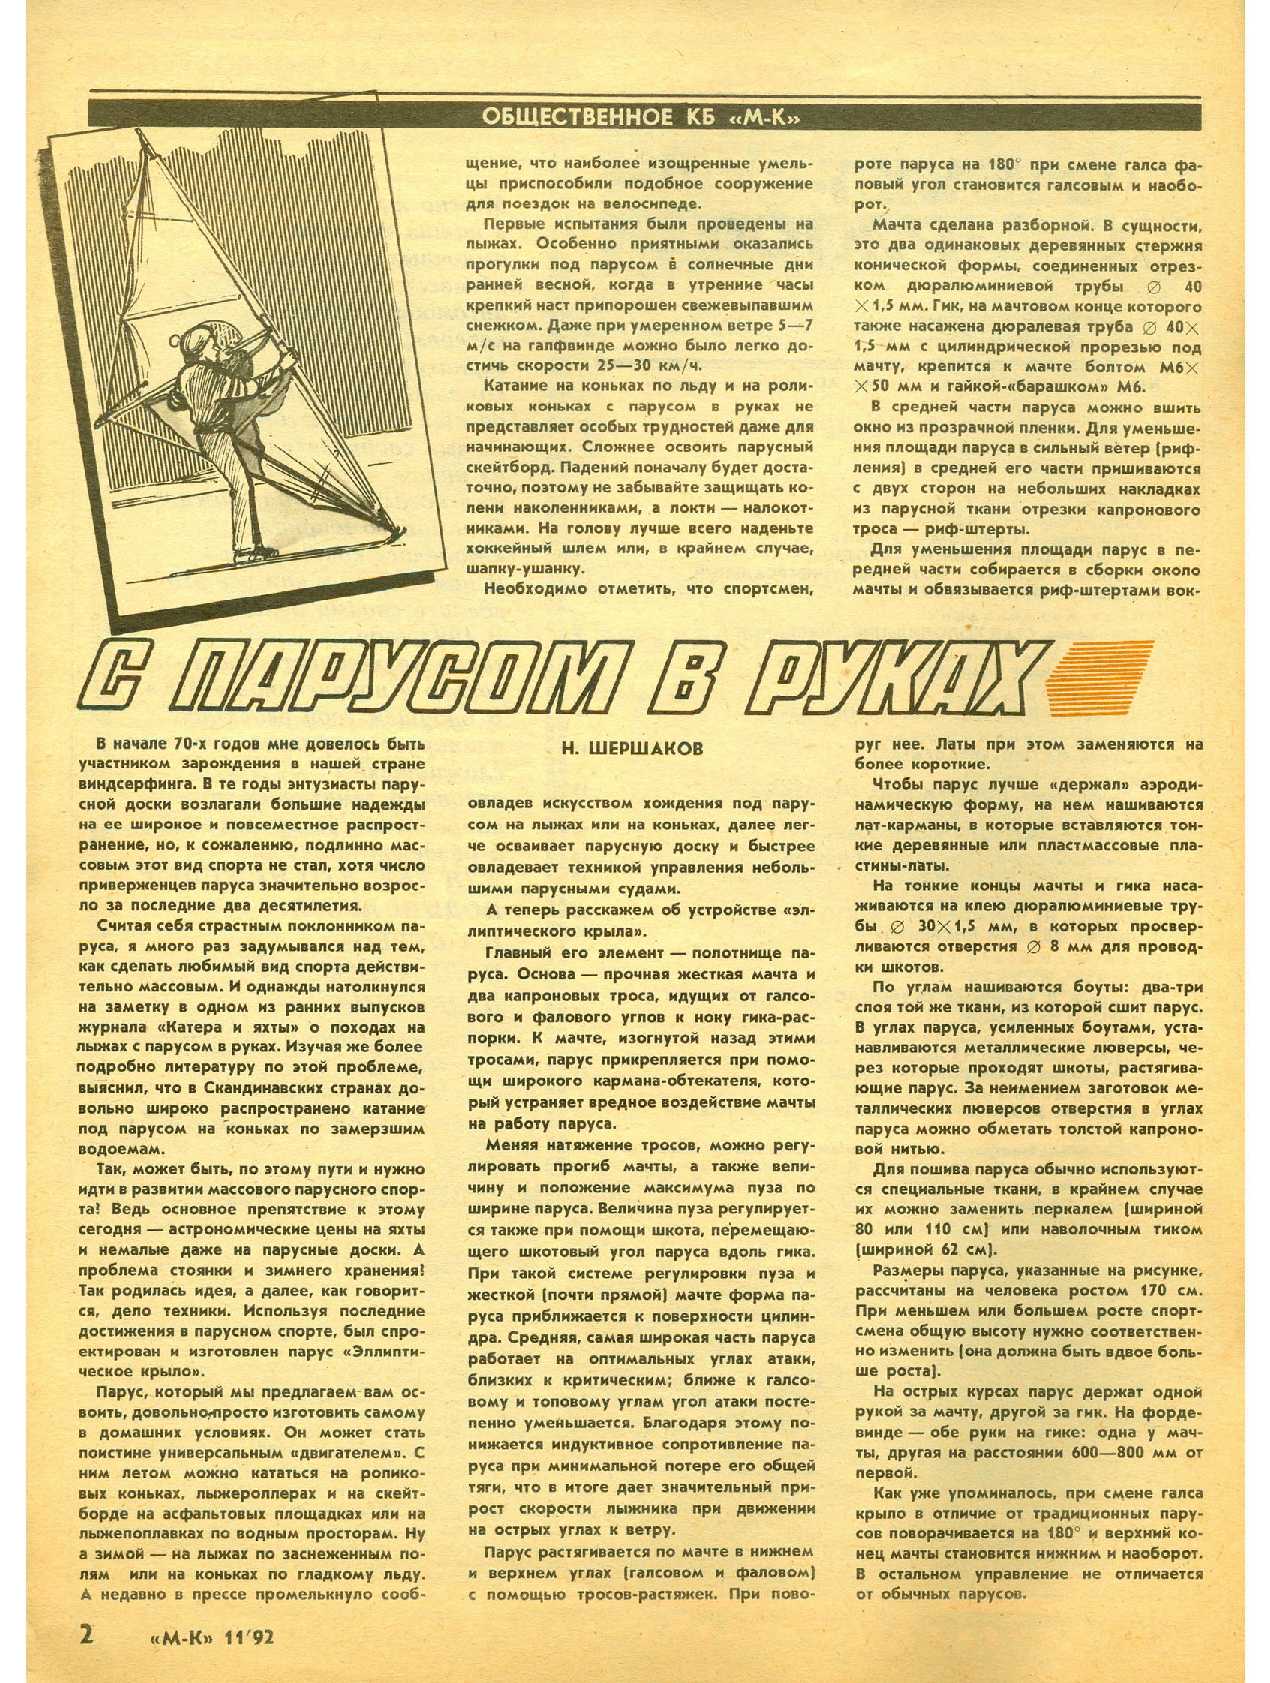 МК 11, 1992, 2 c.